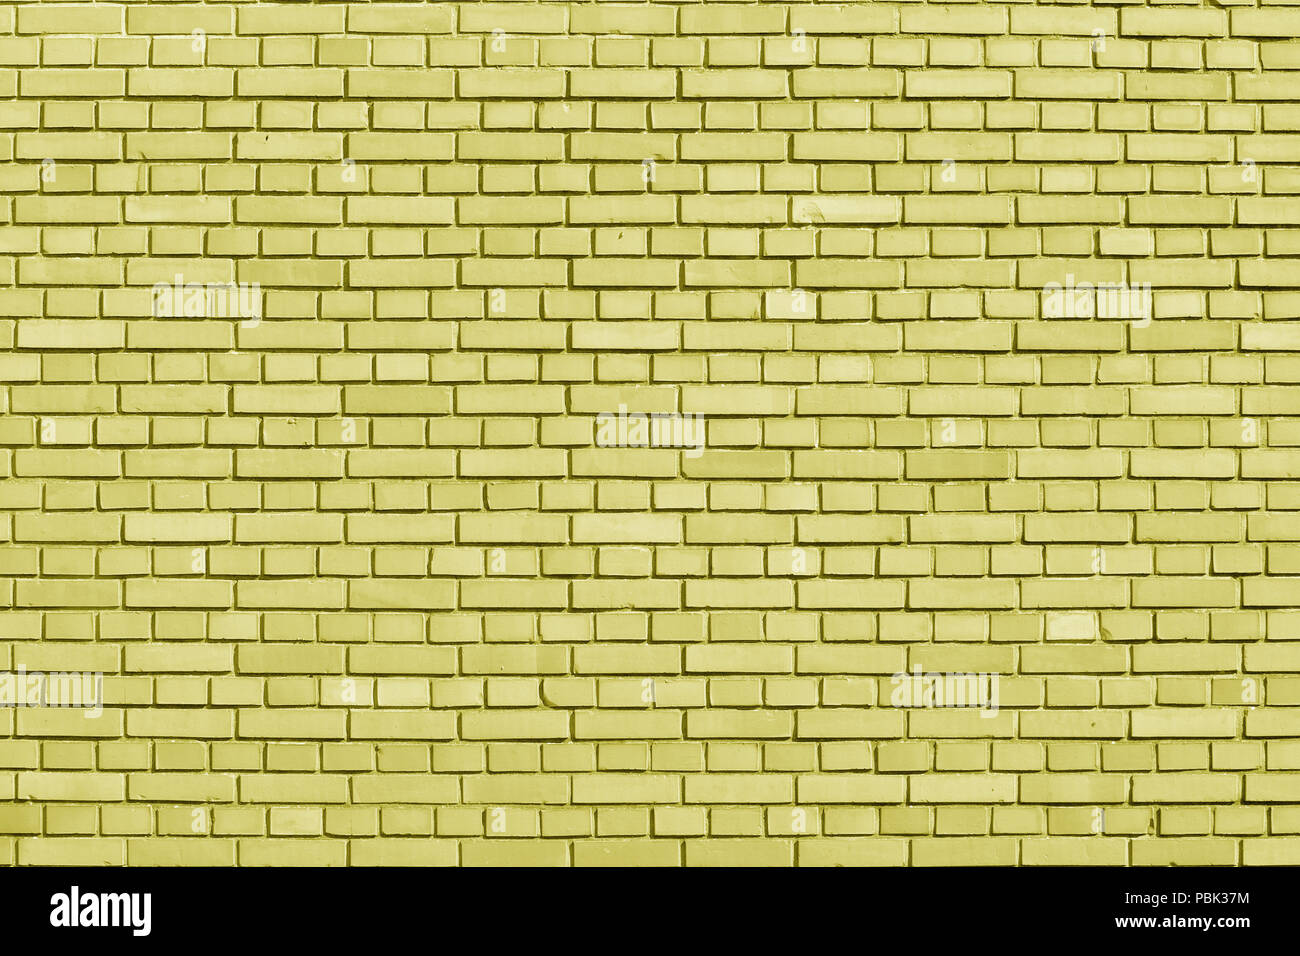 Limelight farbige Mauer Hintergrund Stockfoto